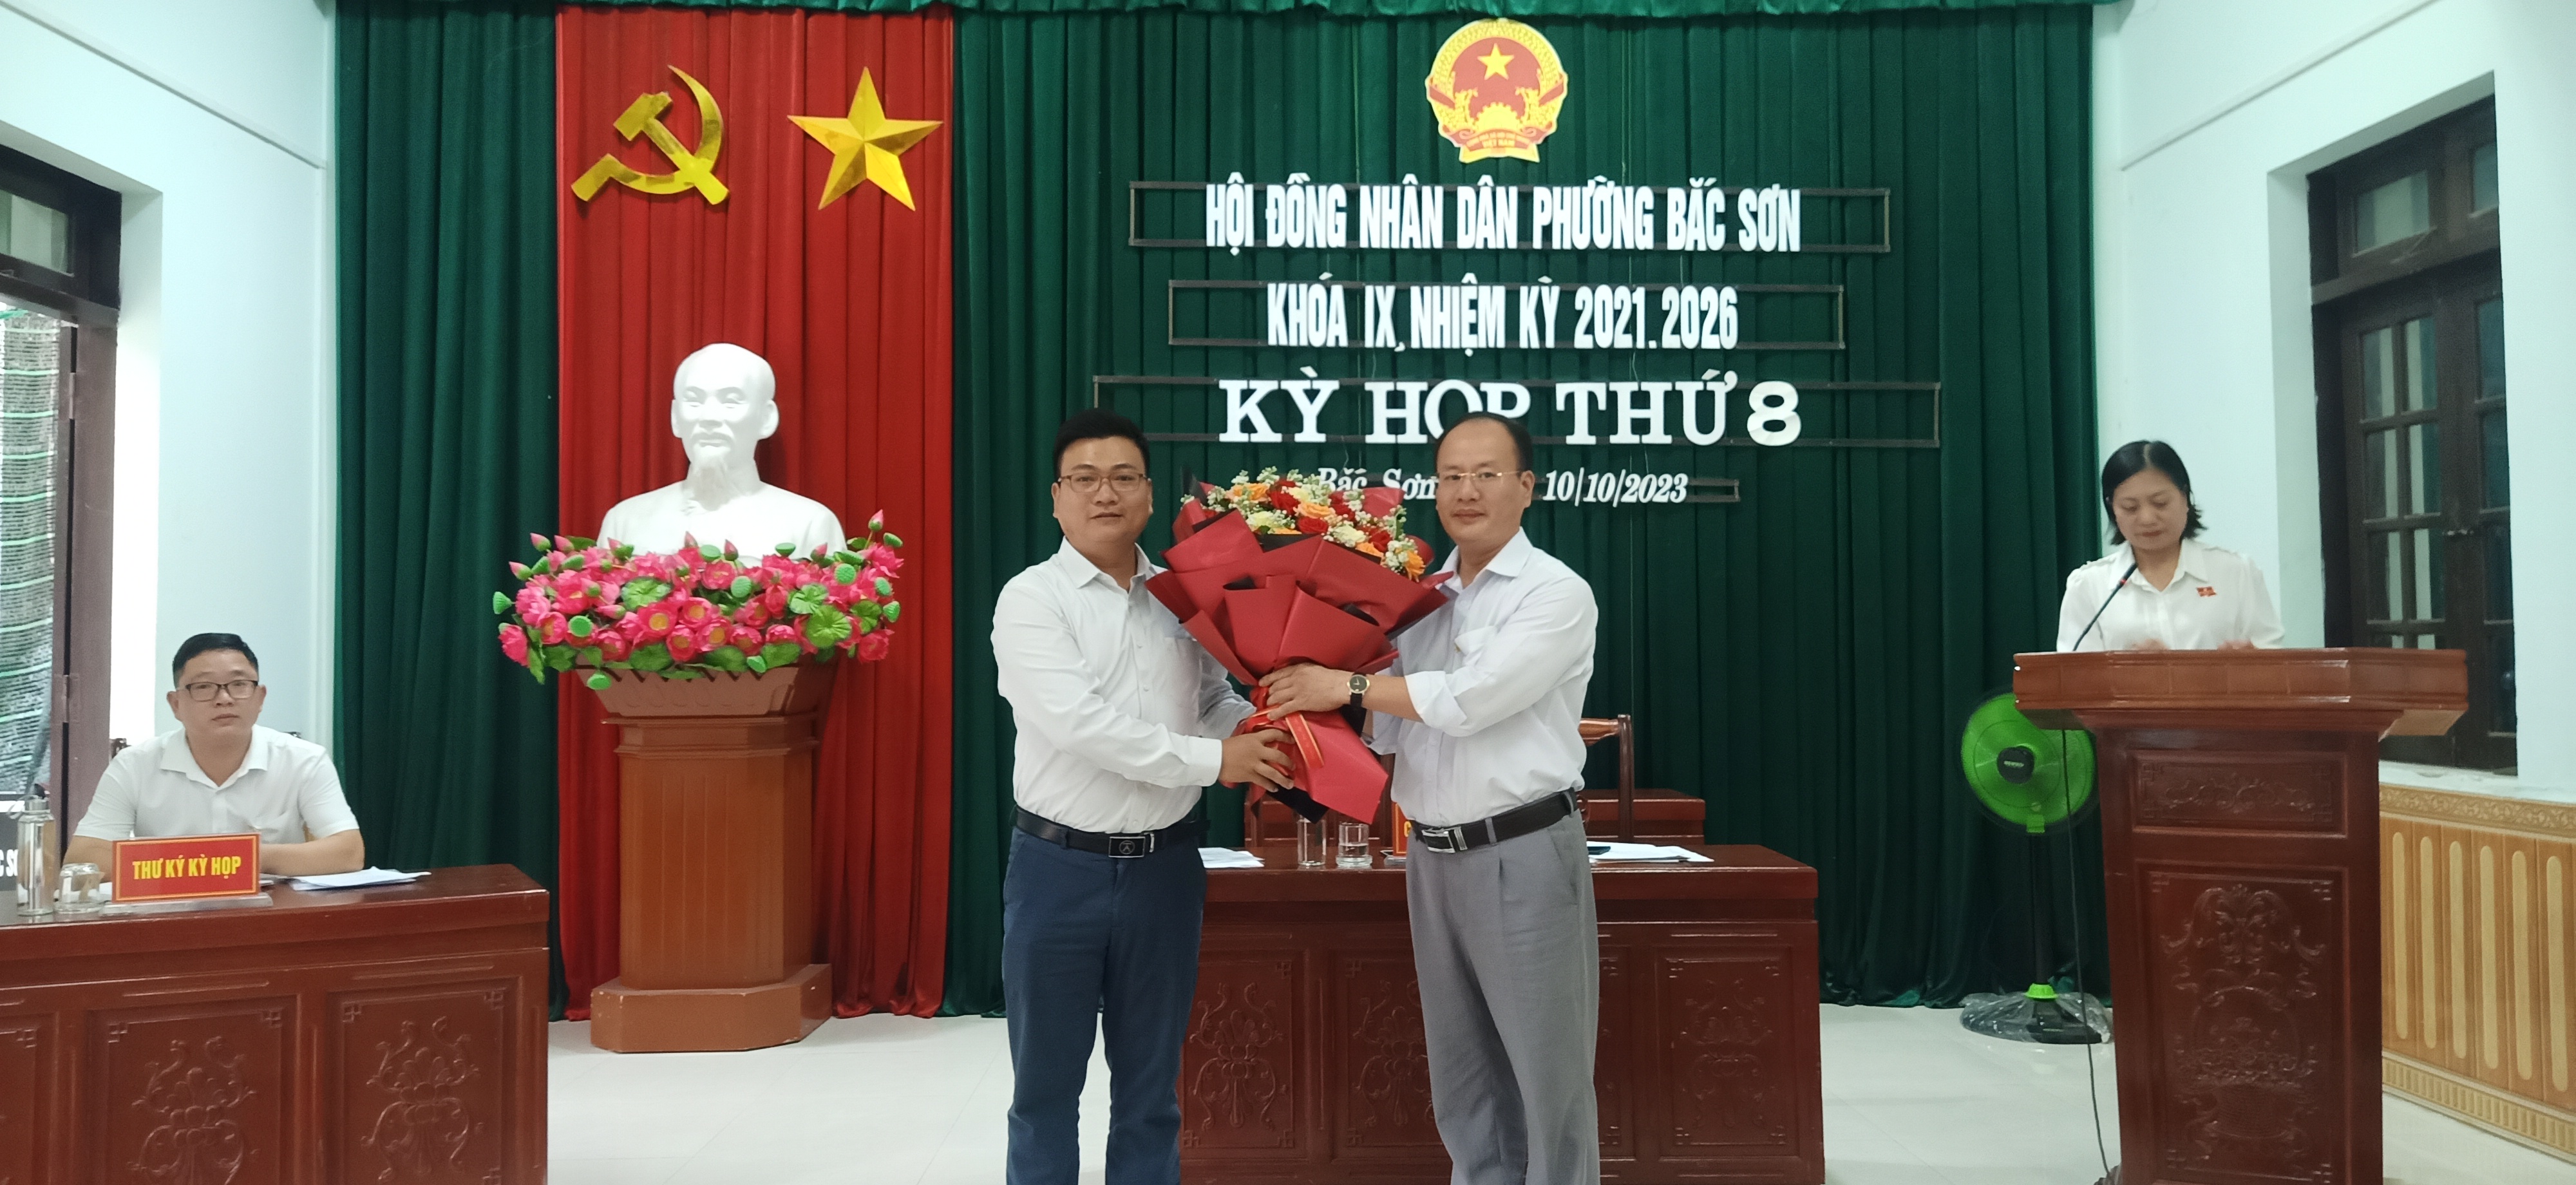 HĐND phường Bắc Sơn tổ chức kỳ họp thứ 8 HĐND phường khóa IX, nhiệm kỳ 2021-2026